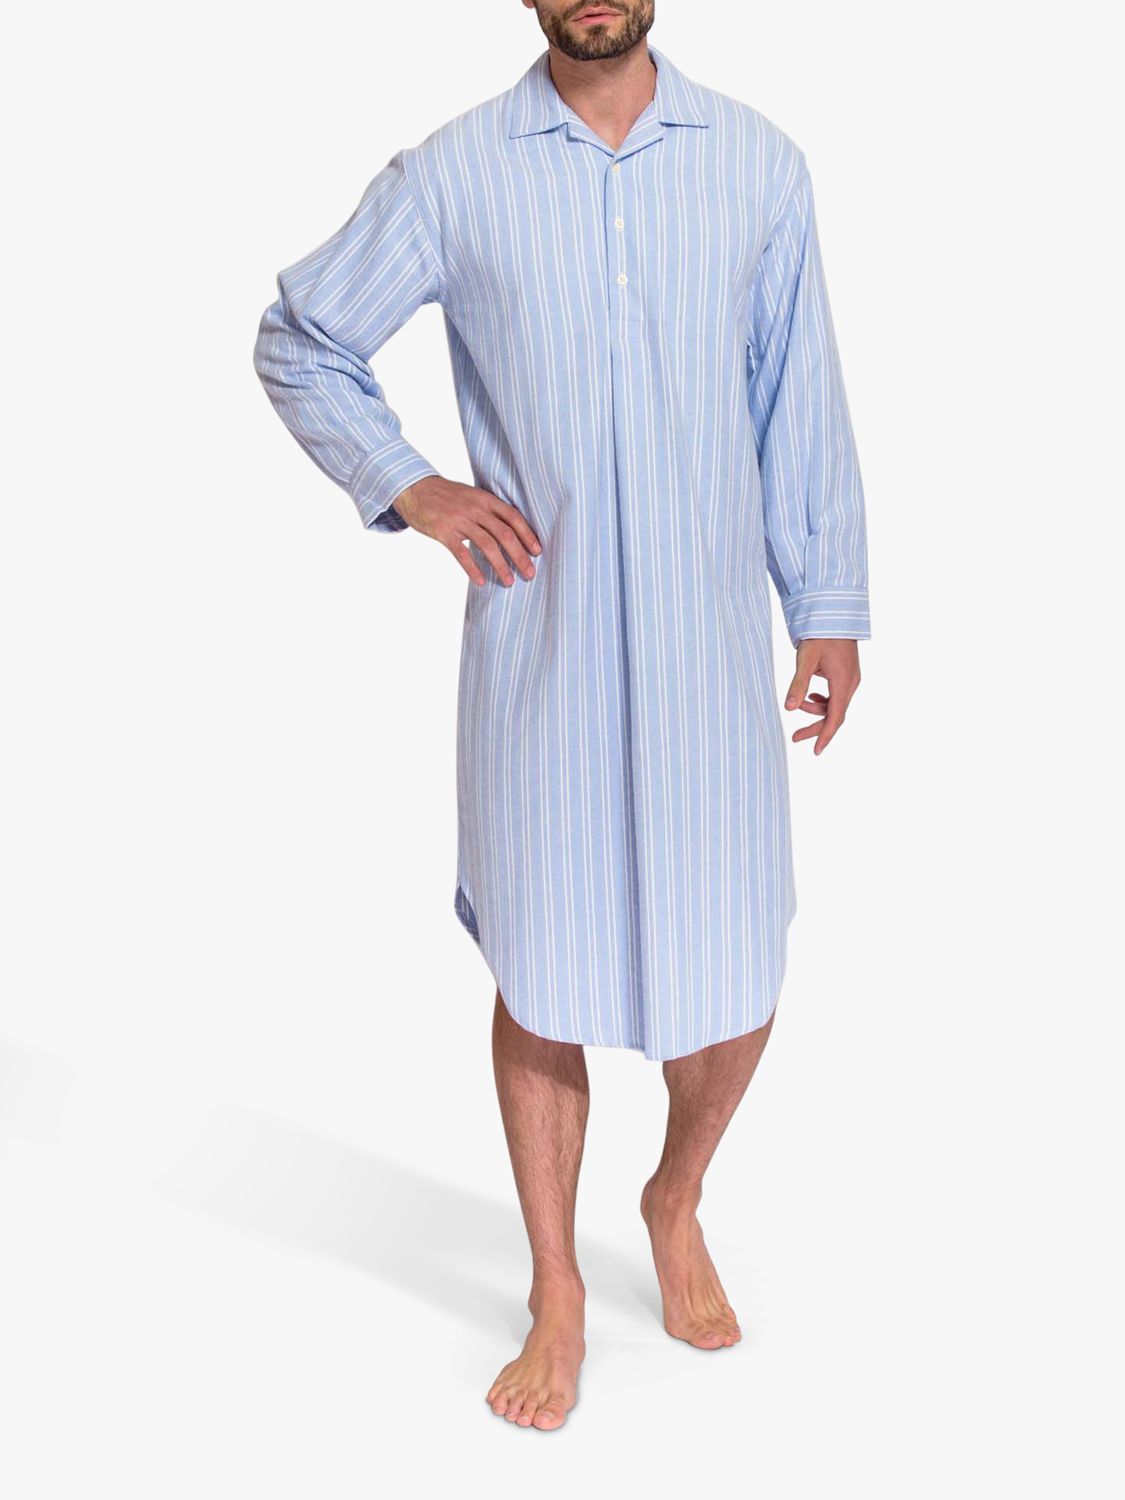 Ночная рубашка из хлопка с начесом в полоску Westwood British Boxers, синий/белый платье женское хлопковое из вискозы элегантная свободная ночная рубашка трапеция с прострочкой одежда для сна ночная рубашка на лето